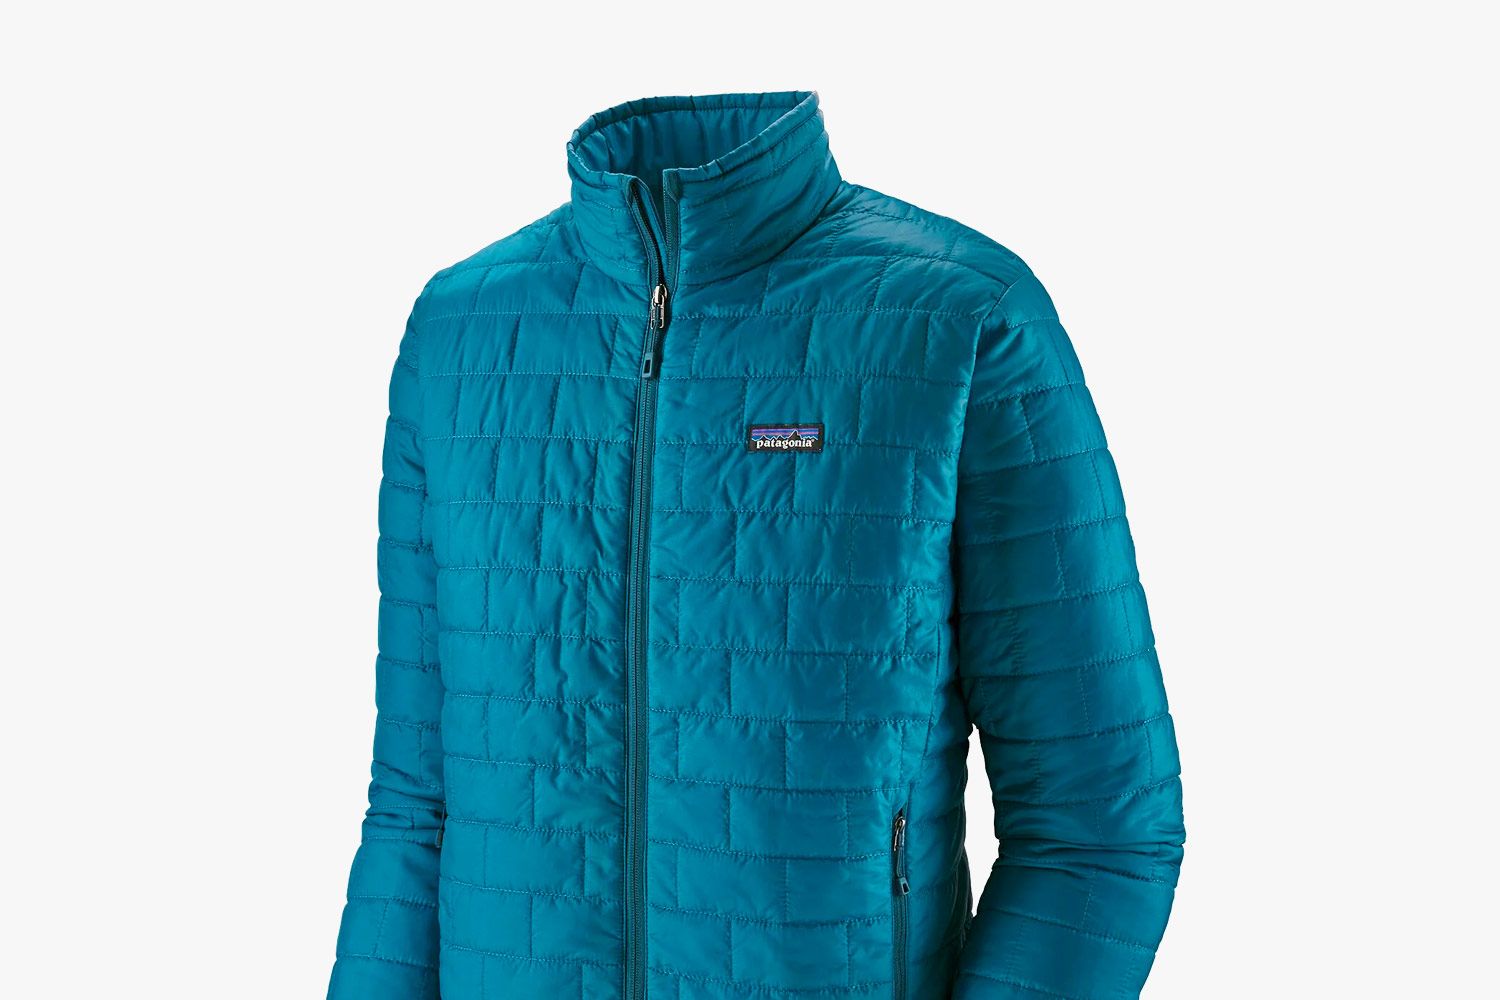 patagonia waxed jacket